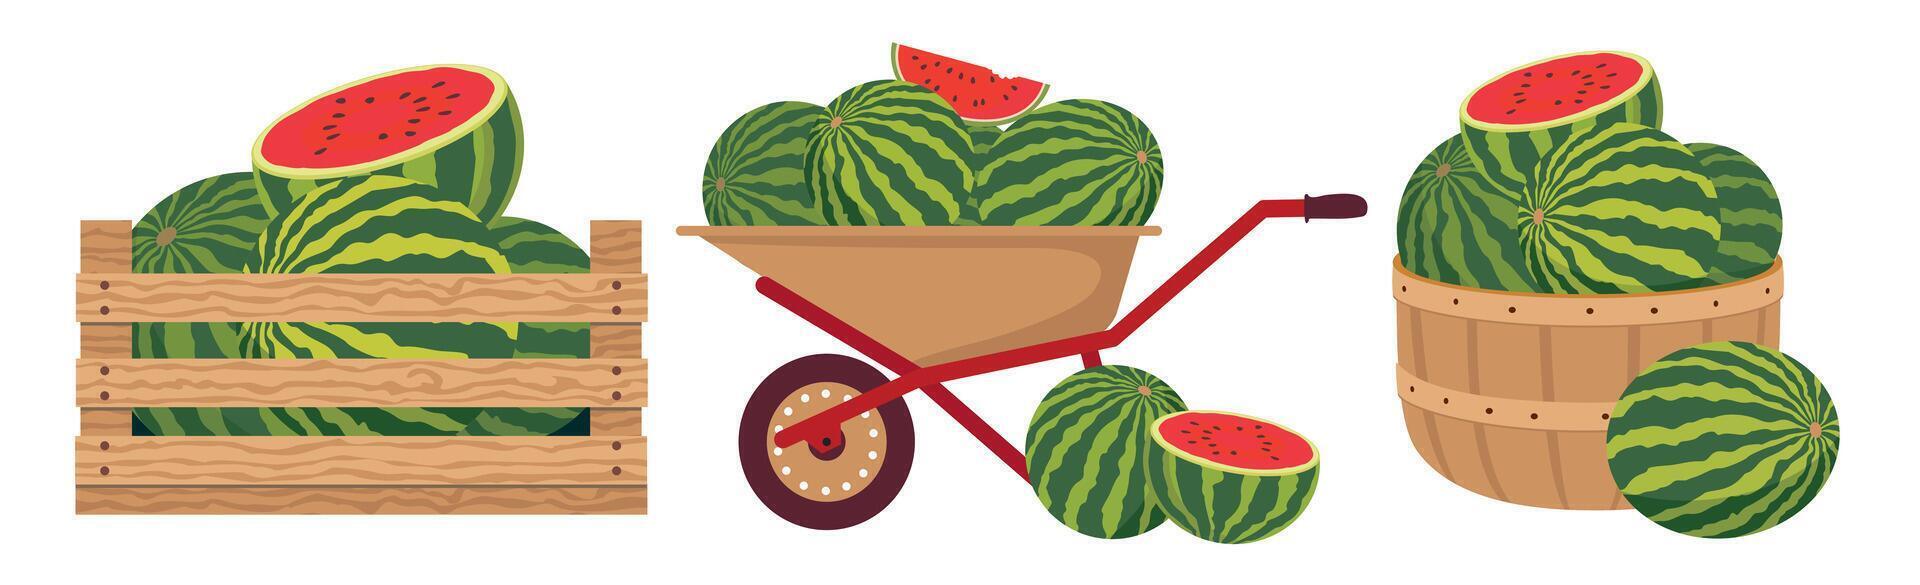 een reeks van boerderij watermeloenen in een mand, doos, kar. divers tuin containers met watermeloenen. vector geïllustreerd clip art.